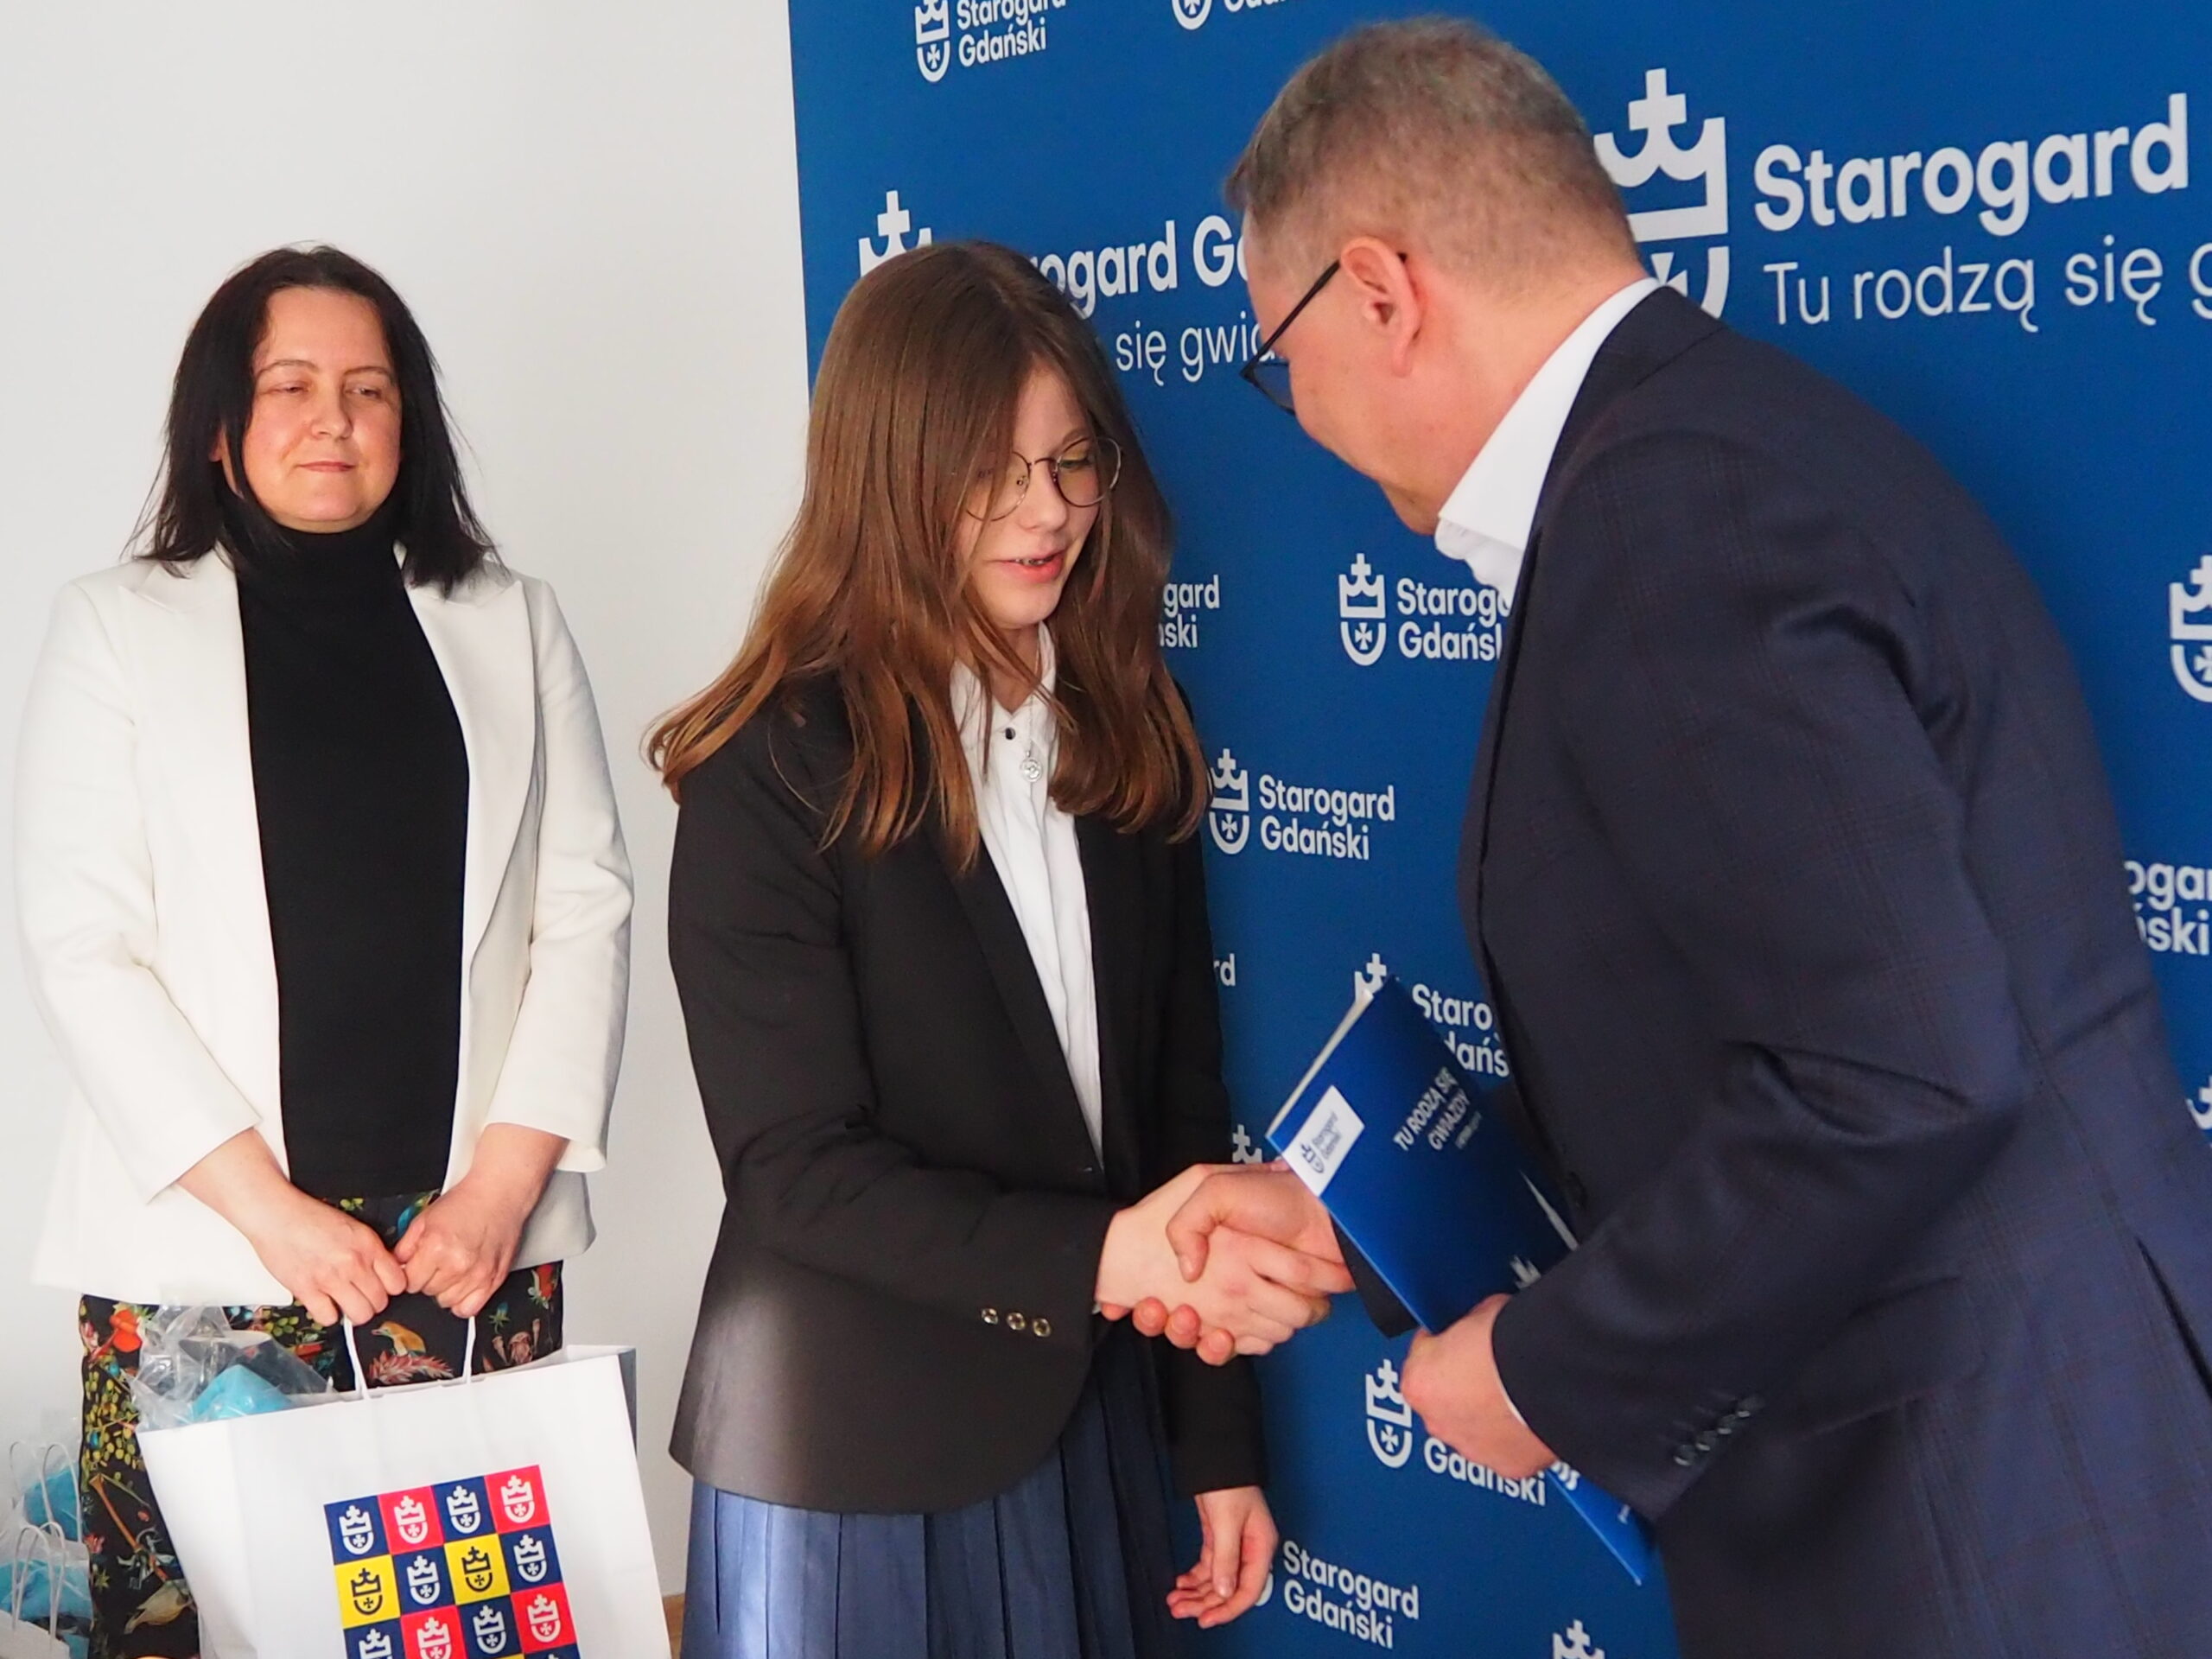 Każdy obecny na spotkaniu członek Młodzieżowej rady Miasta Starogard Gdański otrzymał podziękowania od Prezydenta Miasta Janusza Stankowiaka oraz Pełnomocnika Prezydenta ds. organizacji Pozarządowych, Dzieci i Młodzieży